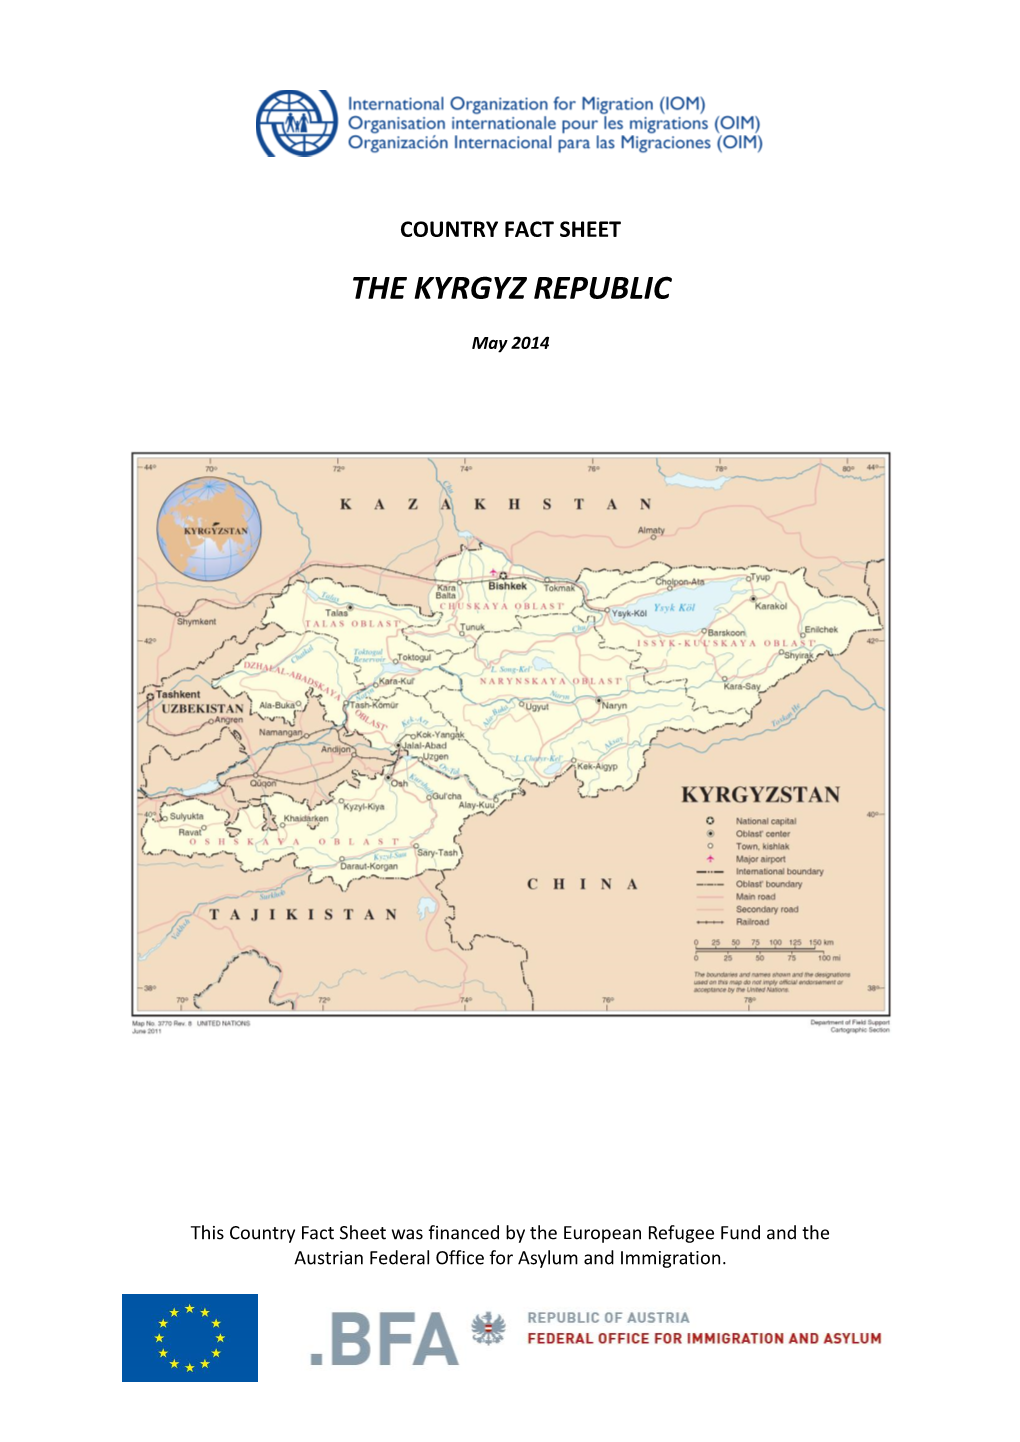 The Kyrgyz Republic